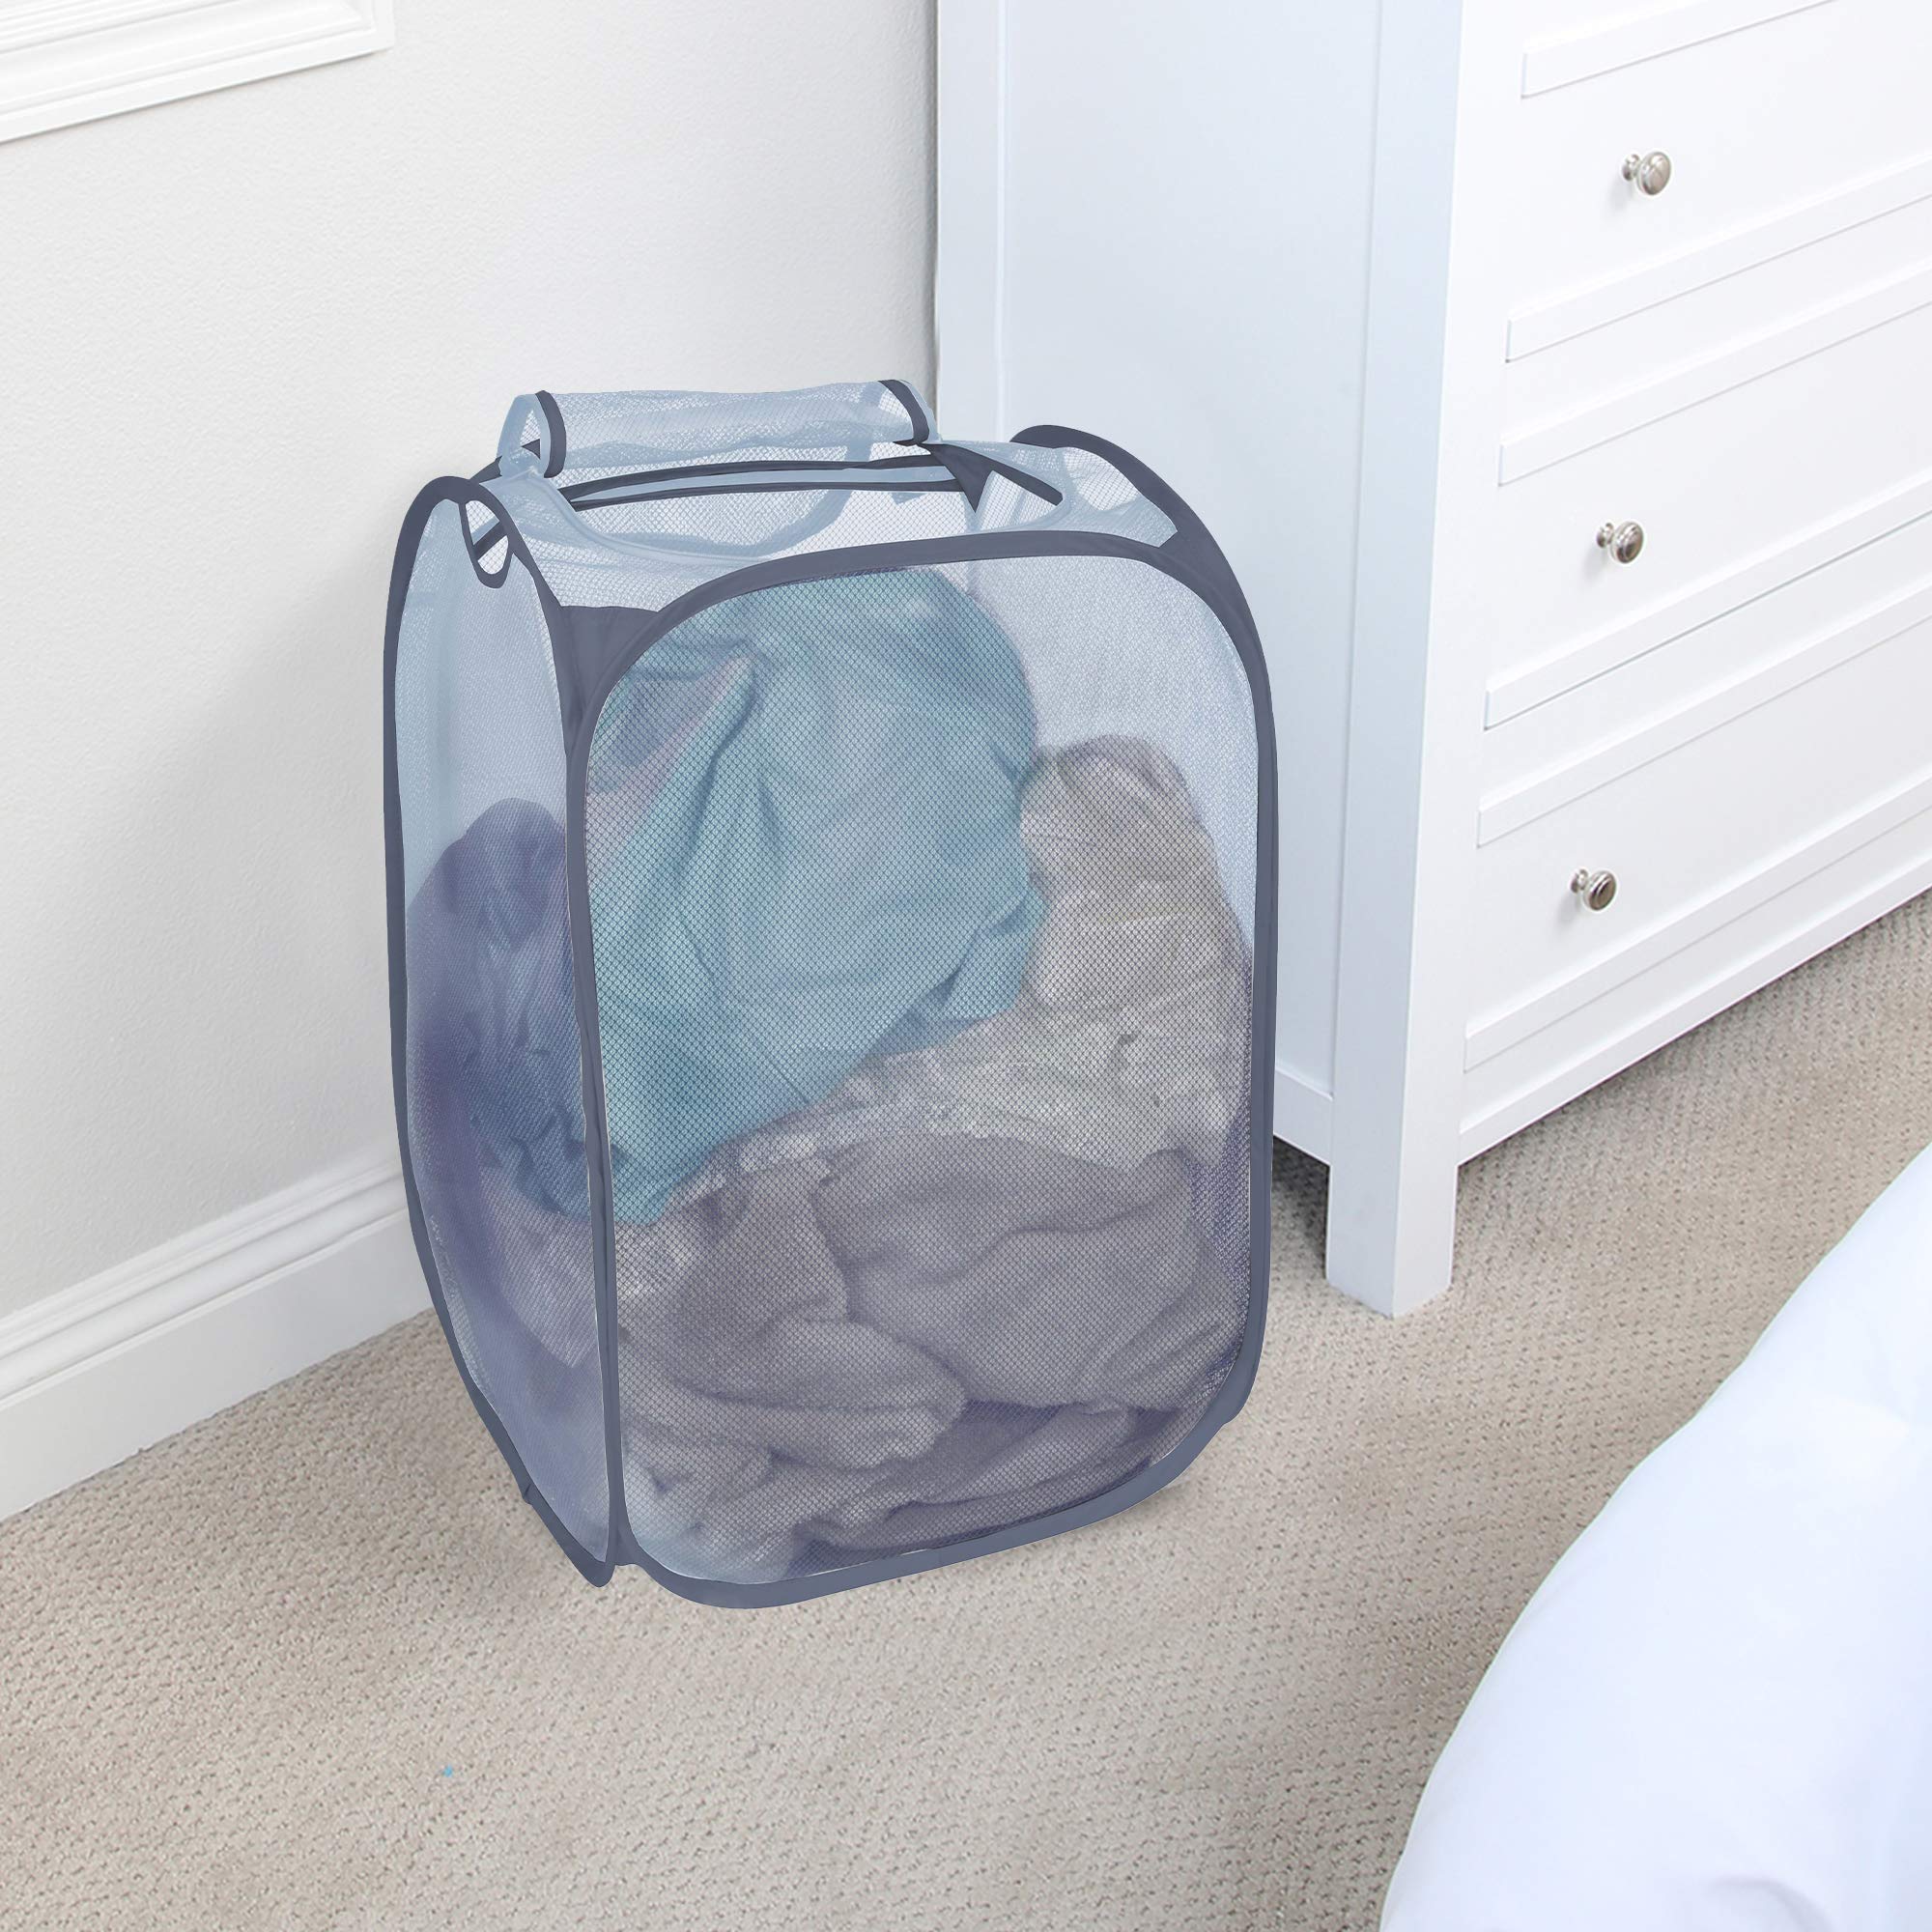 Smart Design Pop-Up Spiral Laundry Hamper Bag Mesh - Collapsible Design -  Dorm Room Essential - Kids Clothes Basket Organizer - Home Organization